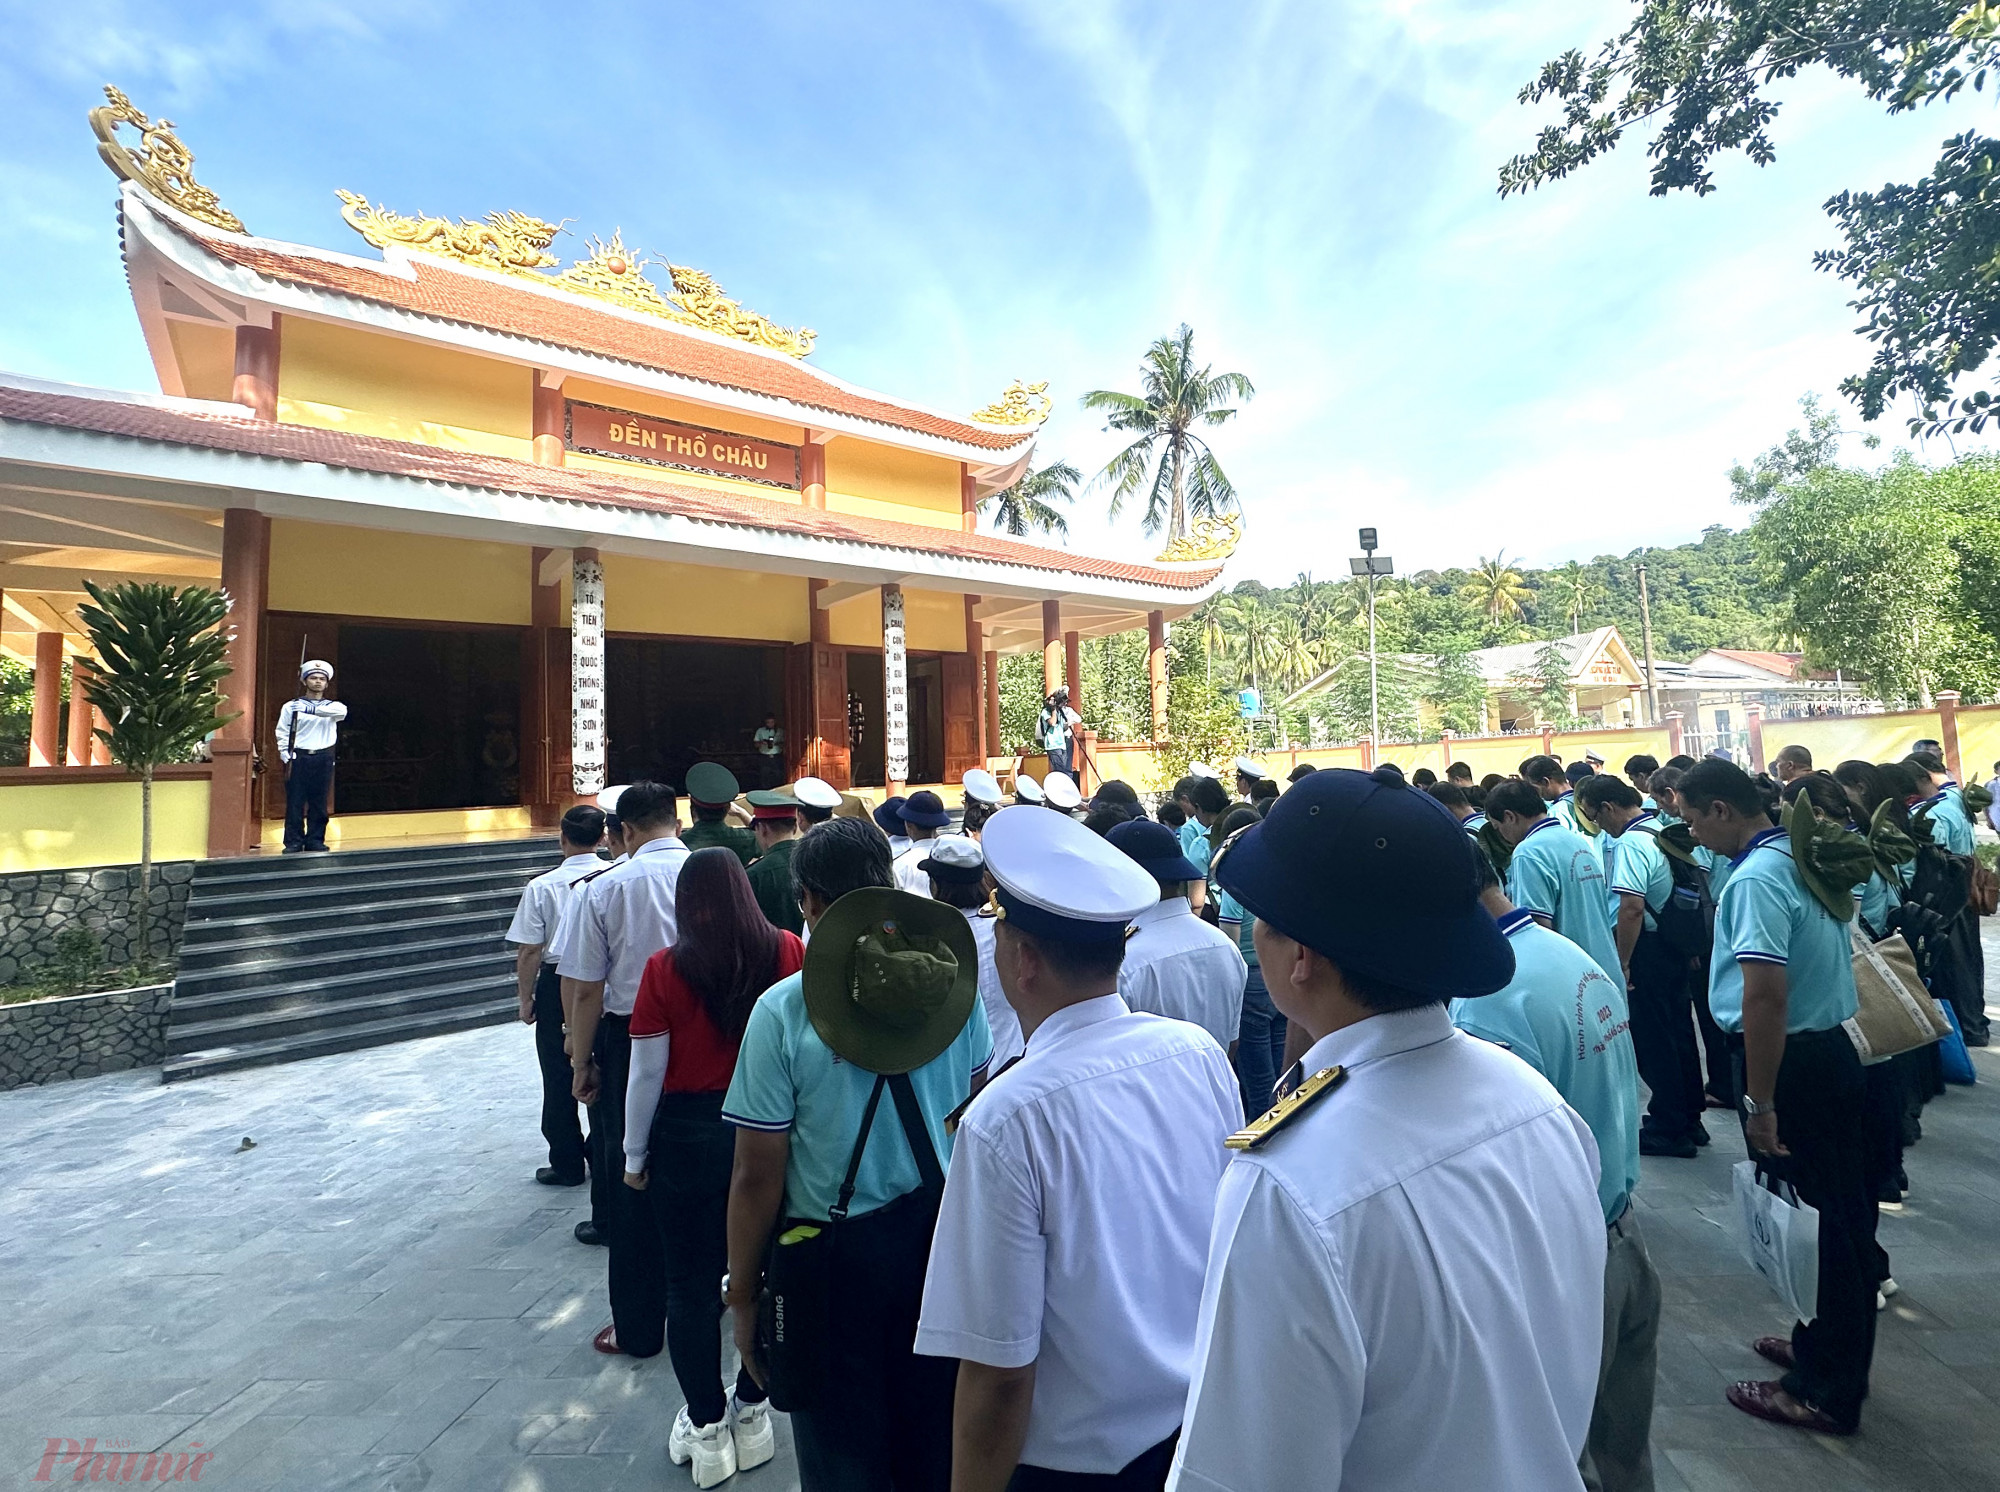 Trong chuyến đi, Đoàn Quân Hải quân và Đoàn đại biểu TPHCM đã đến dâng thánh hoa, dâng hương tại đền thờ Bác Hồ.